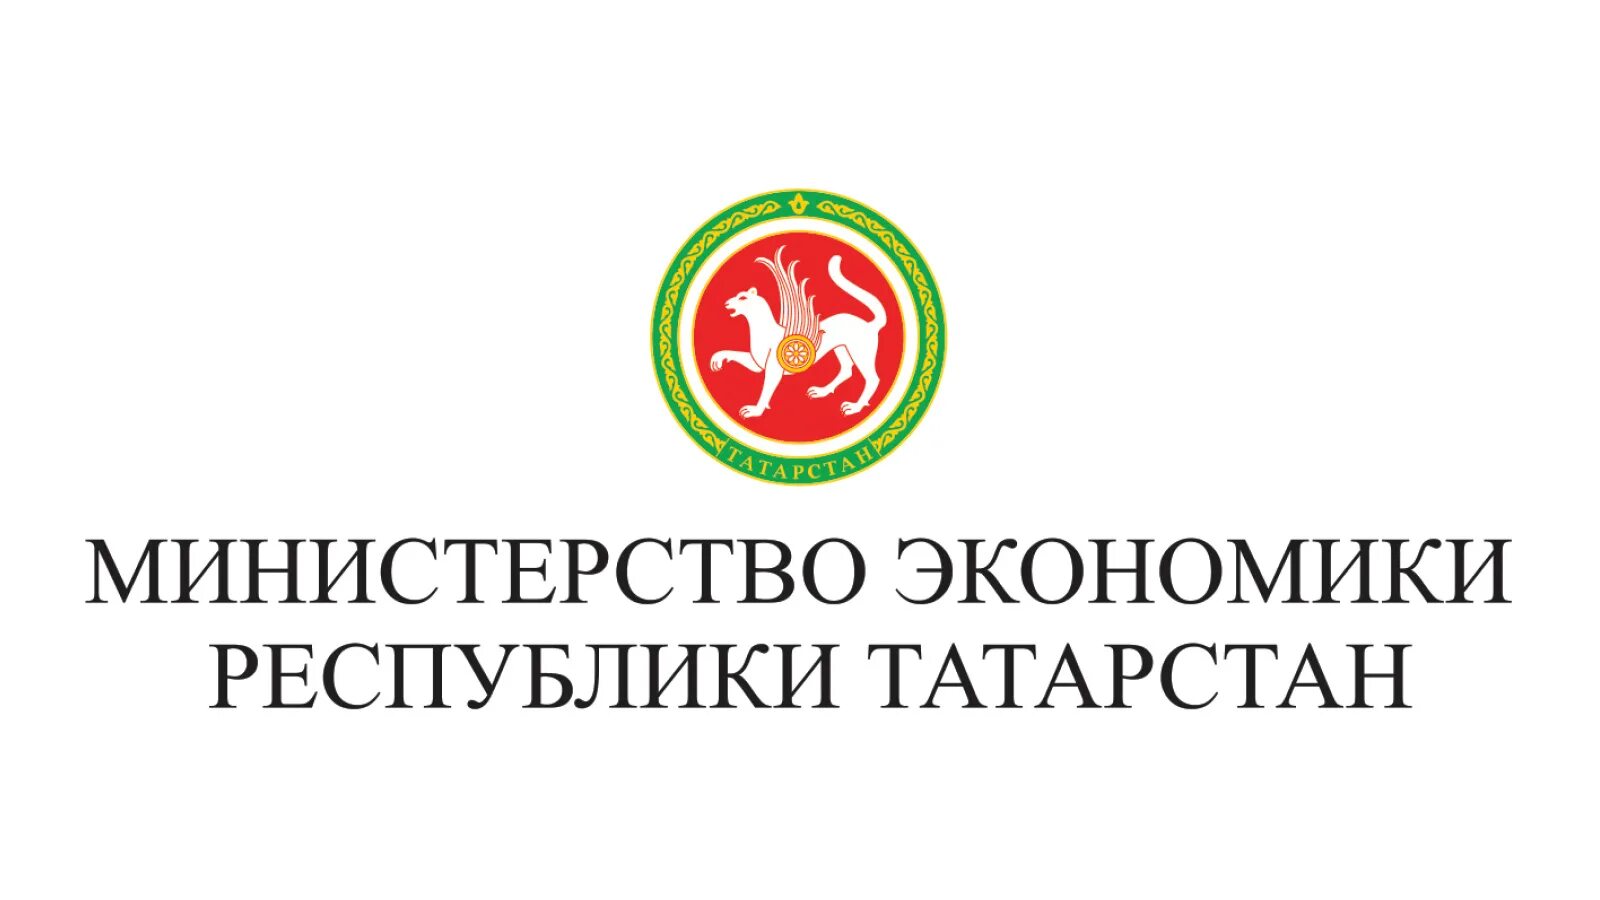 Министерство экономики республики